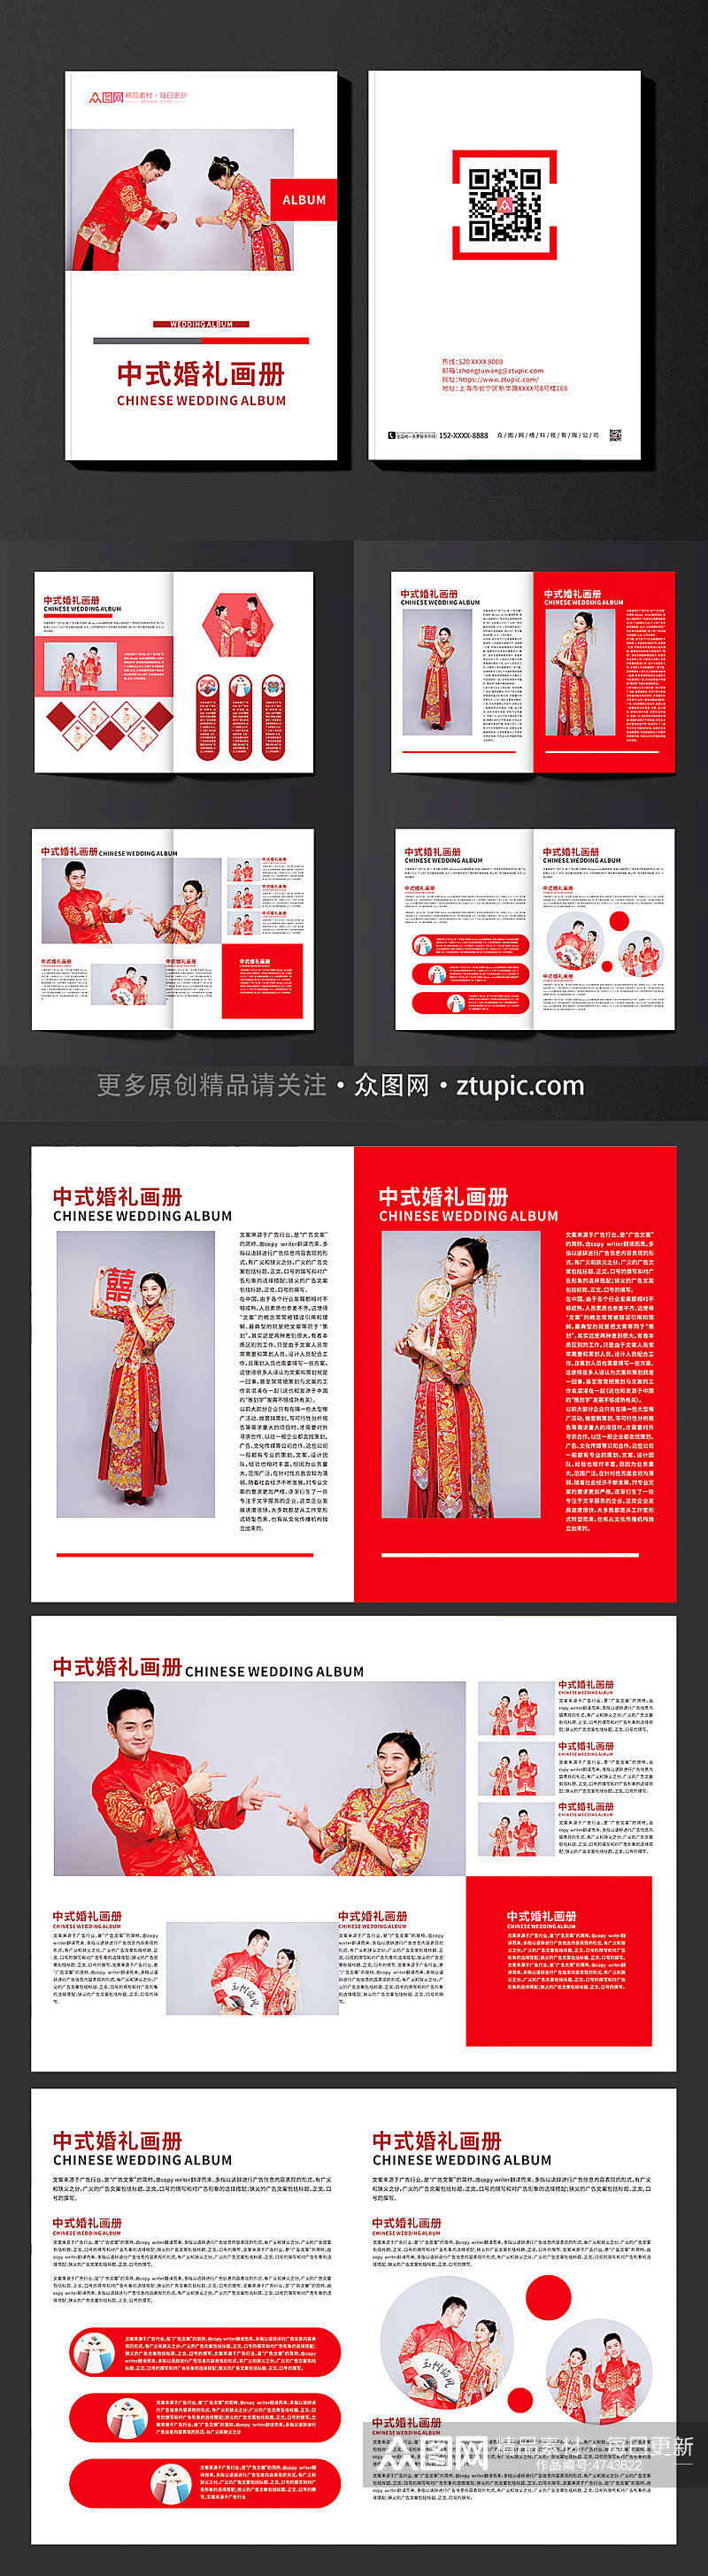 红色简约中式婚礼画册素材